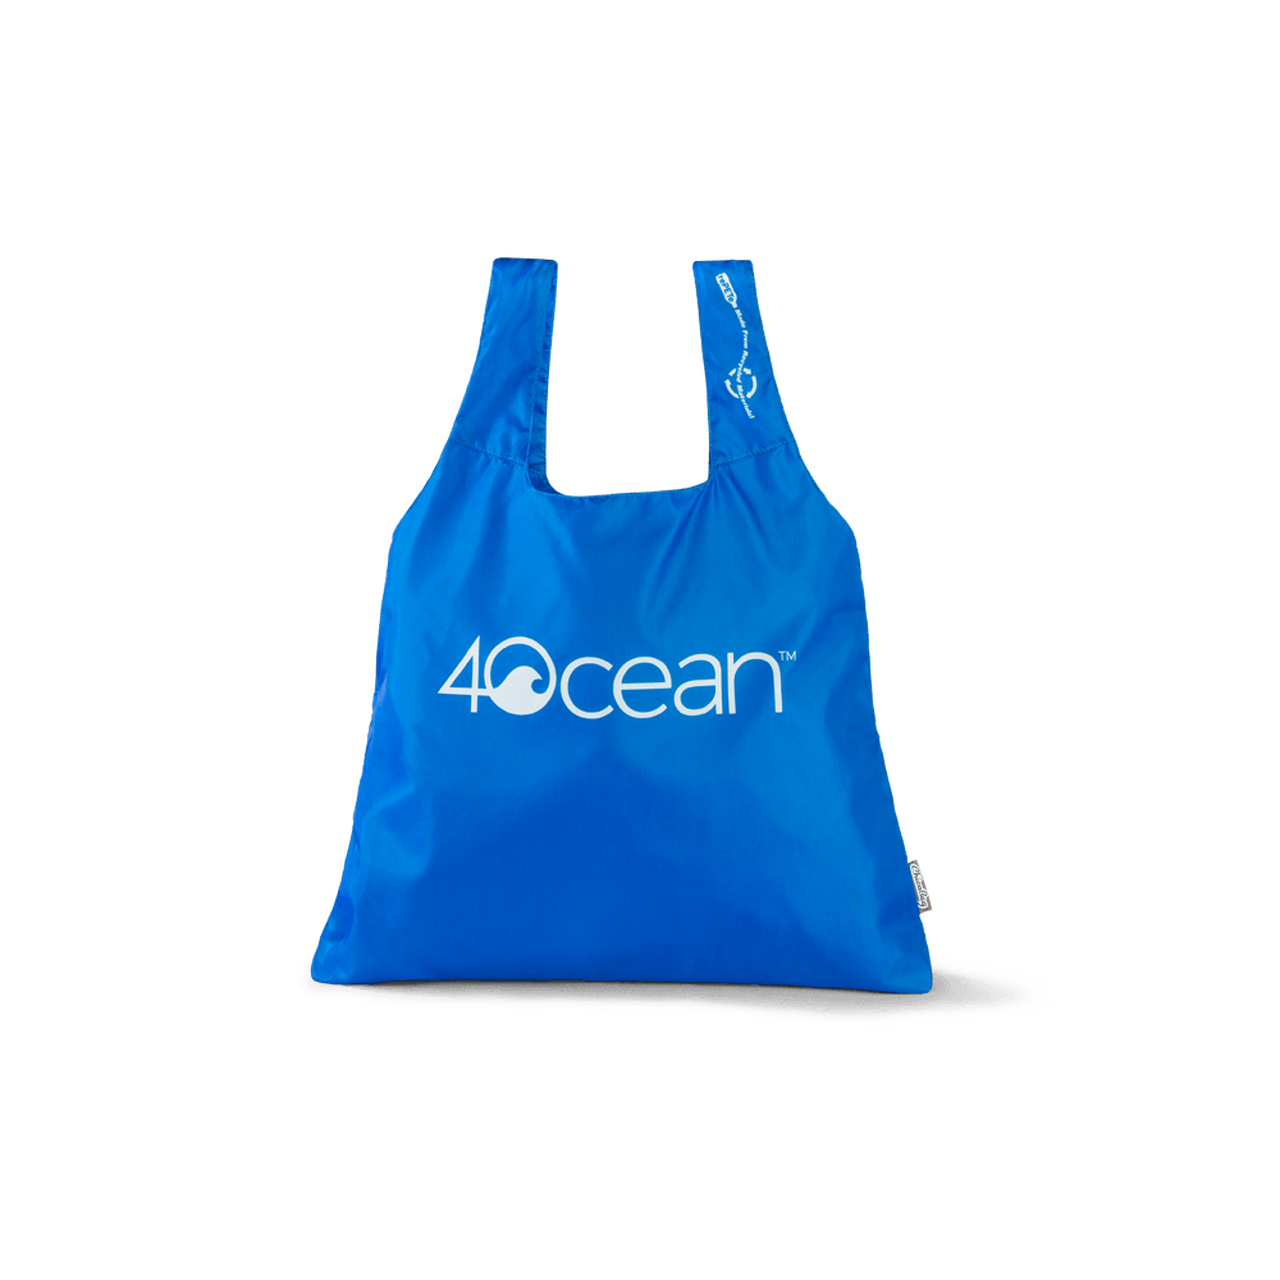 4ocean x ChicoBag Reusable Shopping Bag - blue